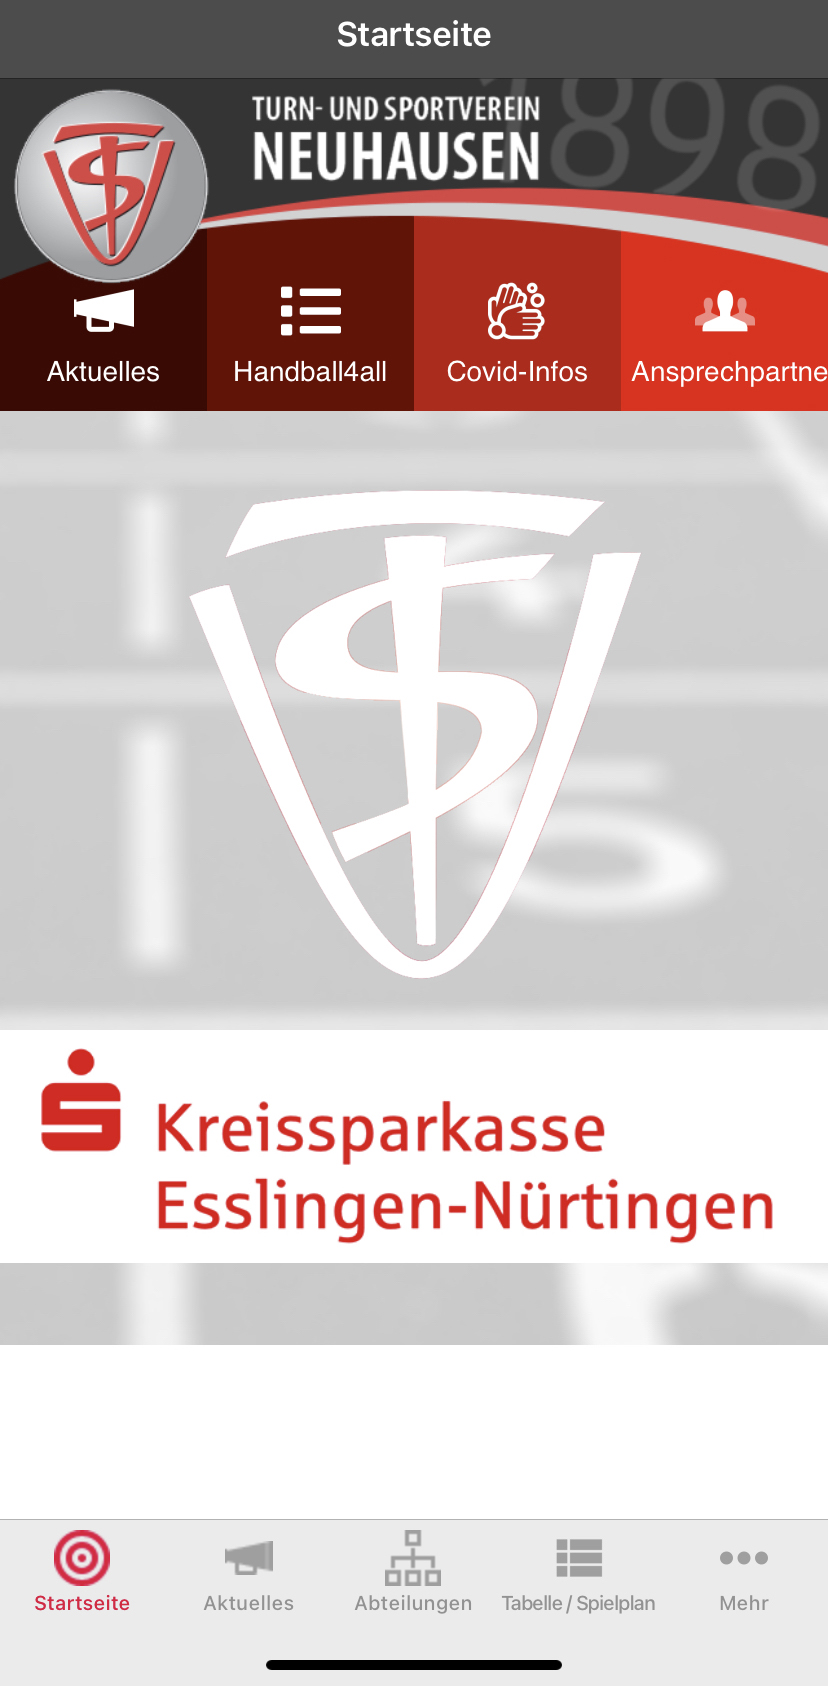 2015 – Die Vereins-App geht an den Start / Dinamo Poltawa zu Gast in Neuhausen